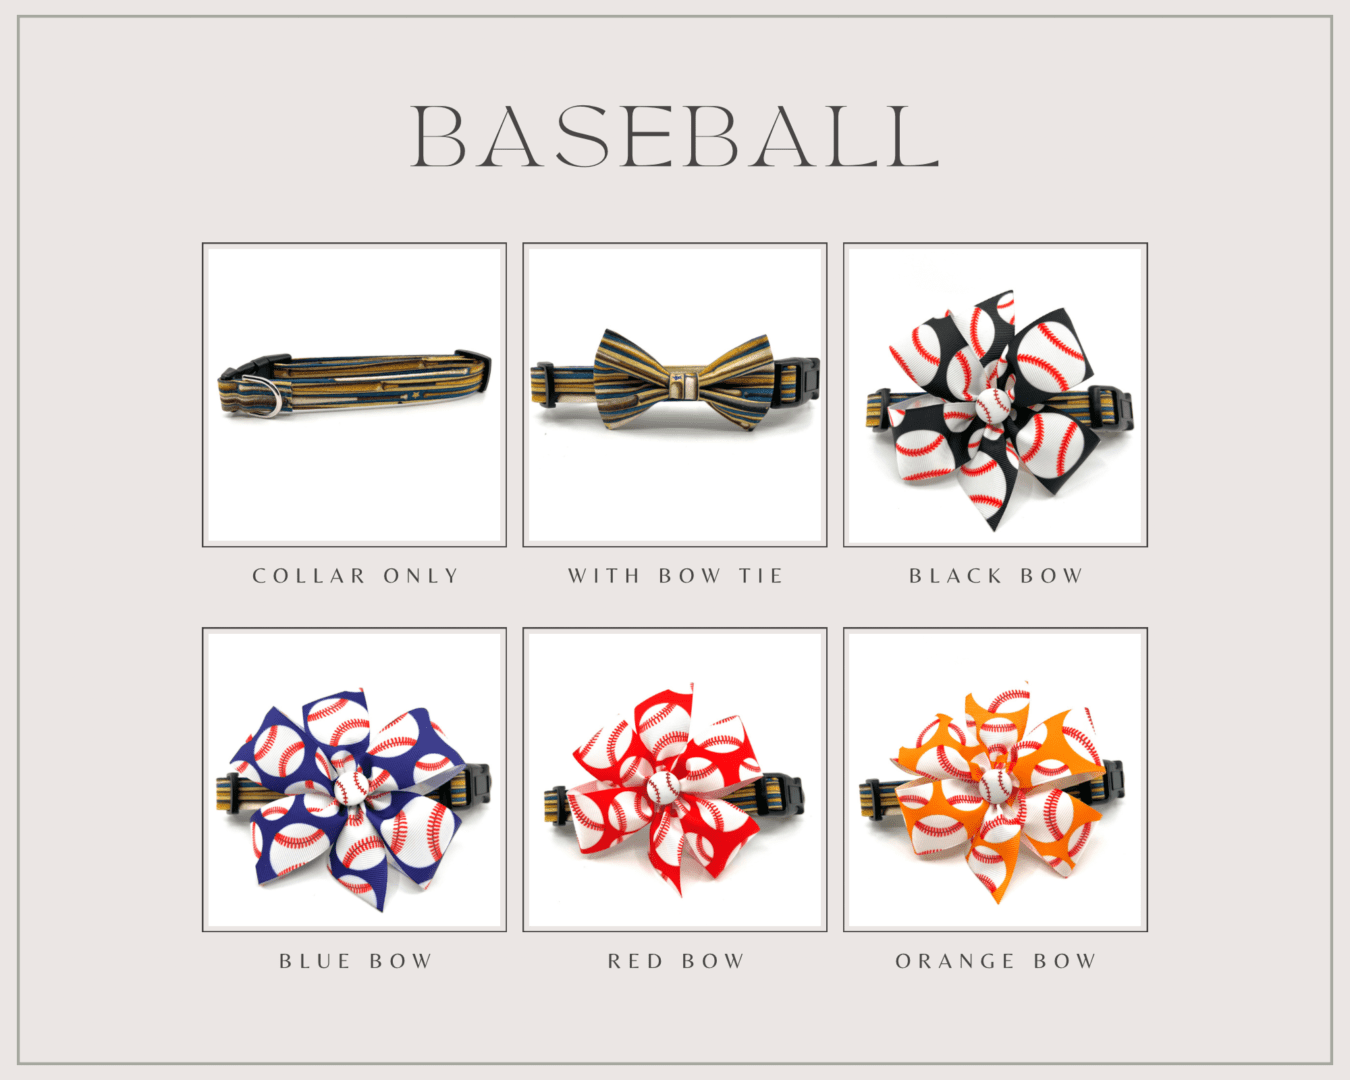 Baseball bowtie - baseball bowtie - baseball bowtie - baseball bowtie - baseball bow.